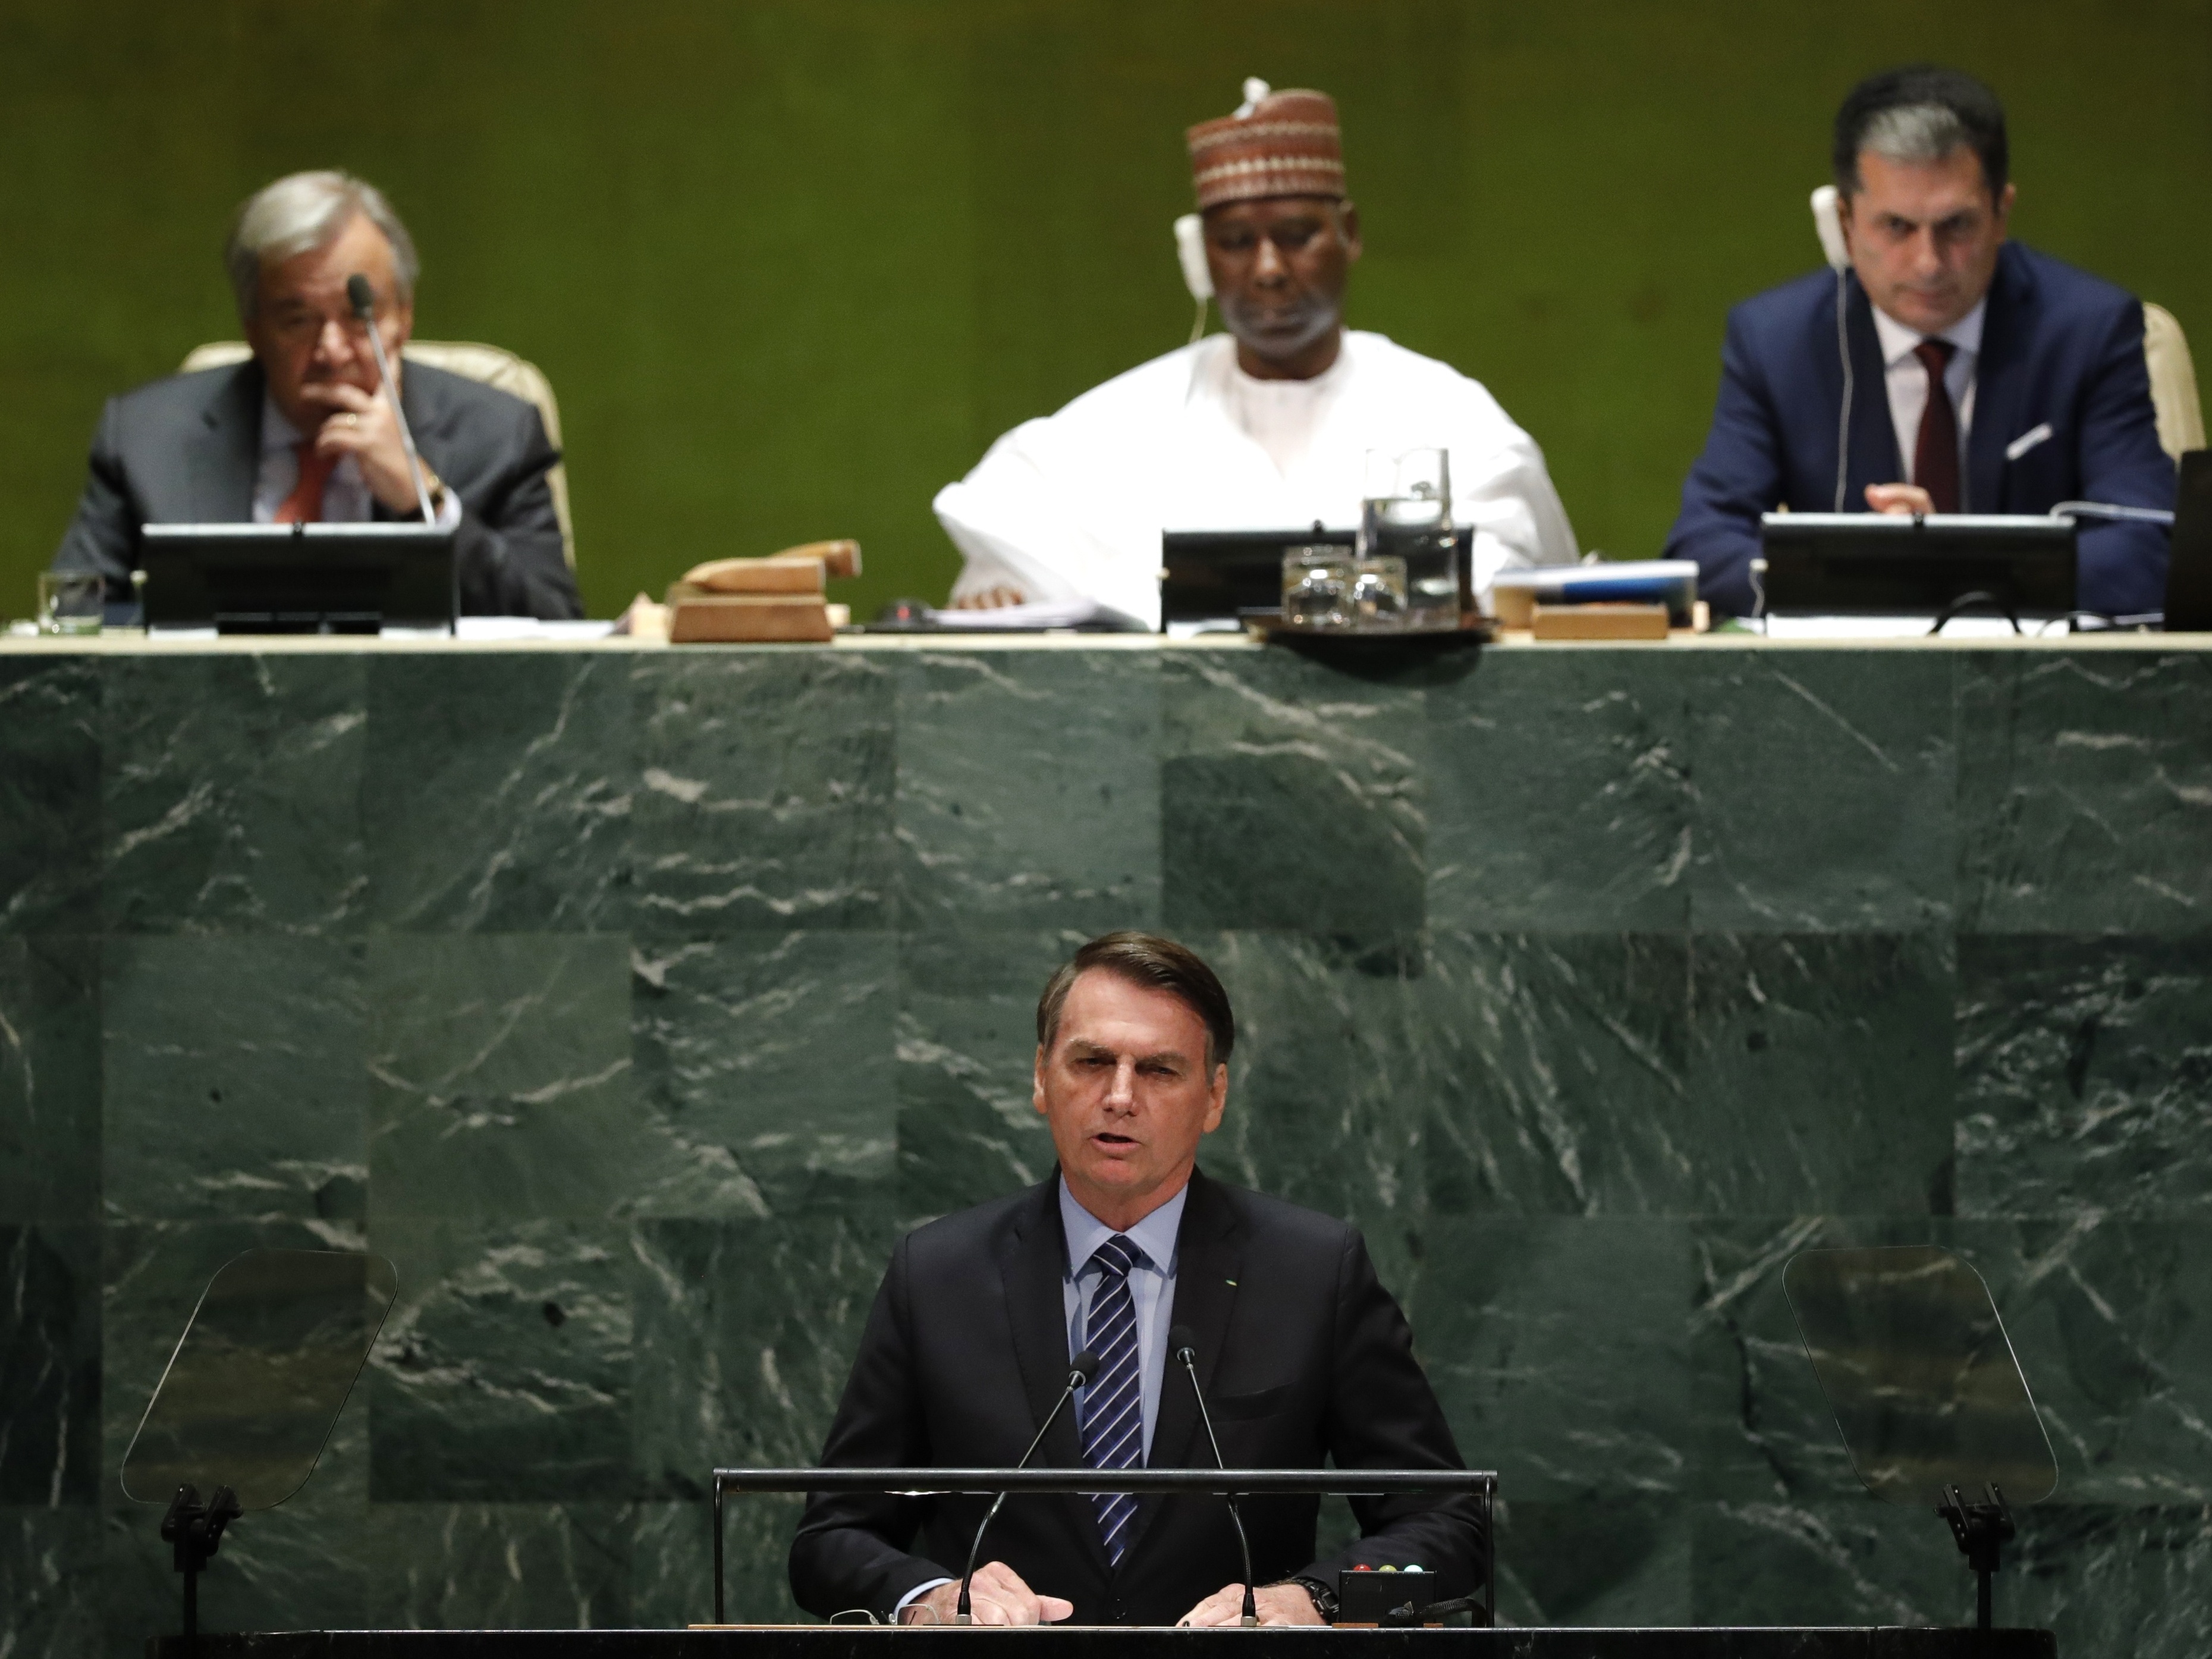 Brasil de Bolsonaro e os seus parceiros ideológicos: o único país do Cone  Sul que se abstem de votar a favor da suspensão da Rússia do Conselho dos  Direitos Humanos da ONU 